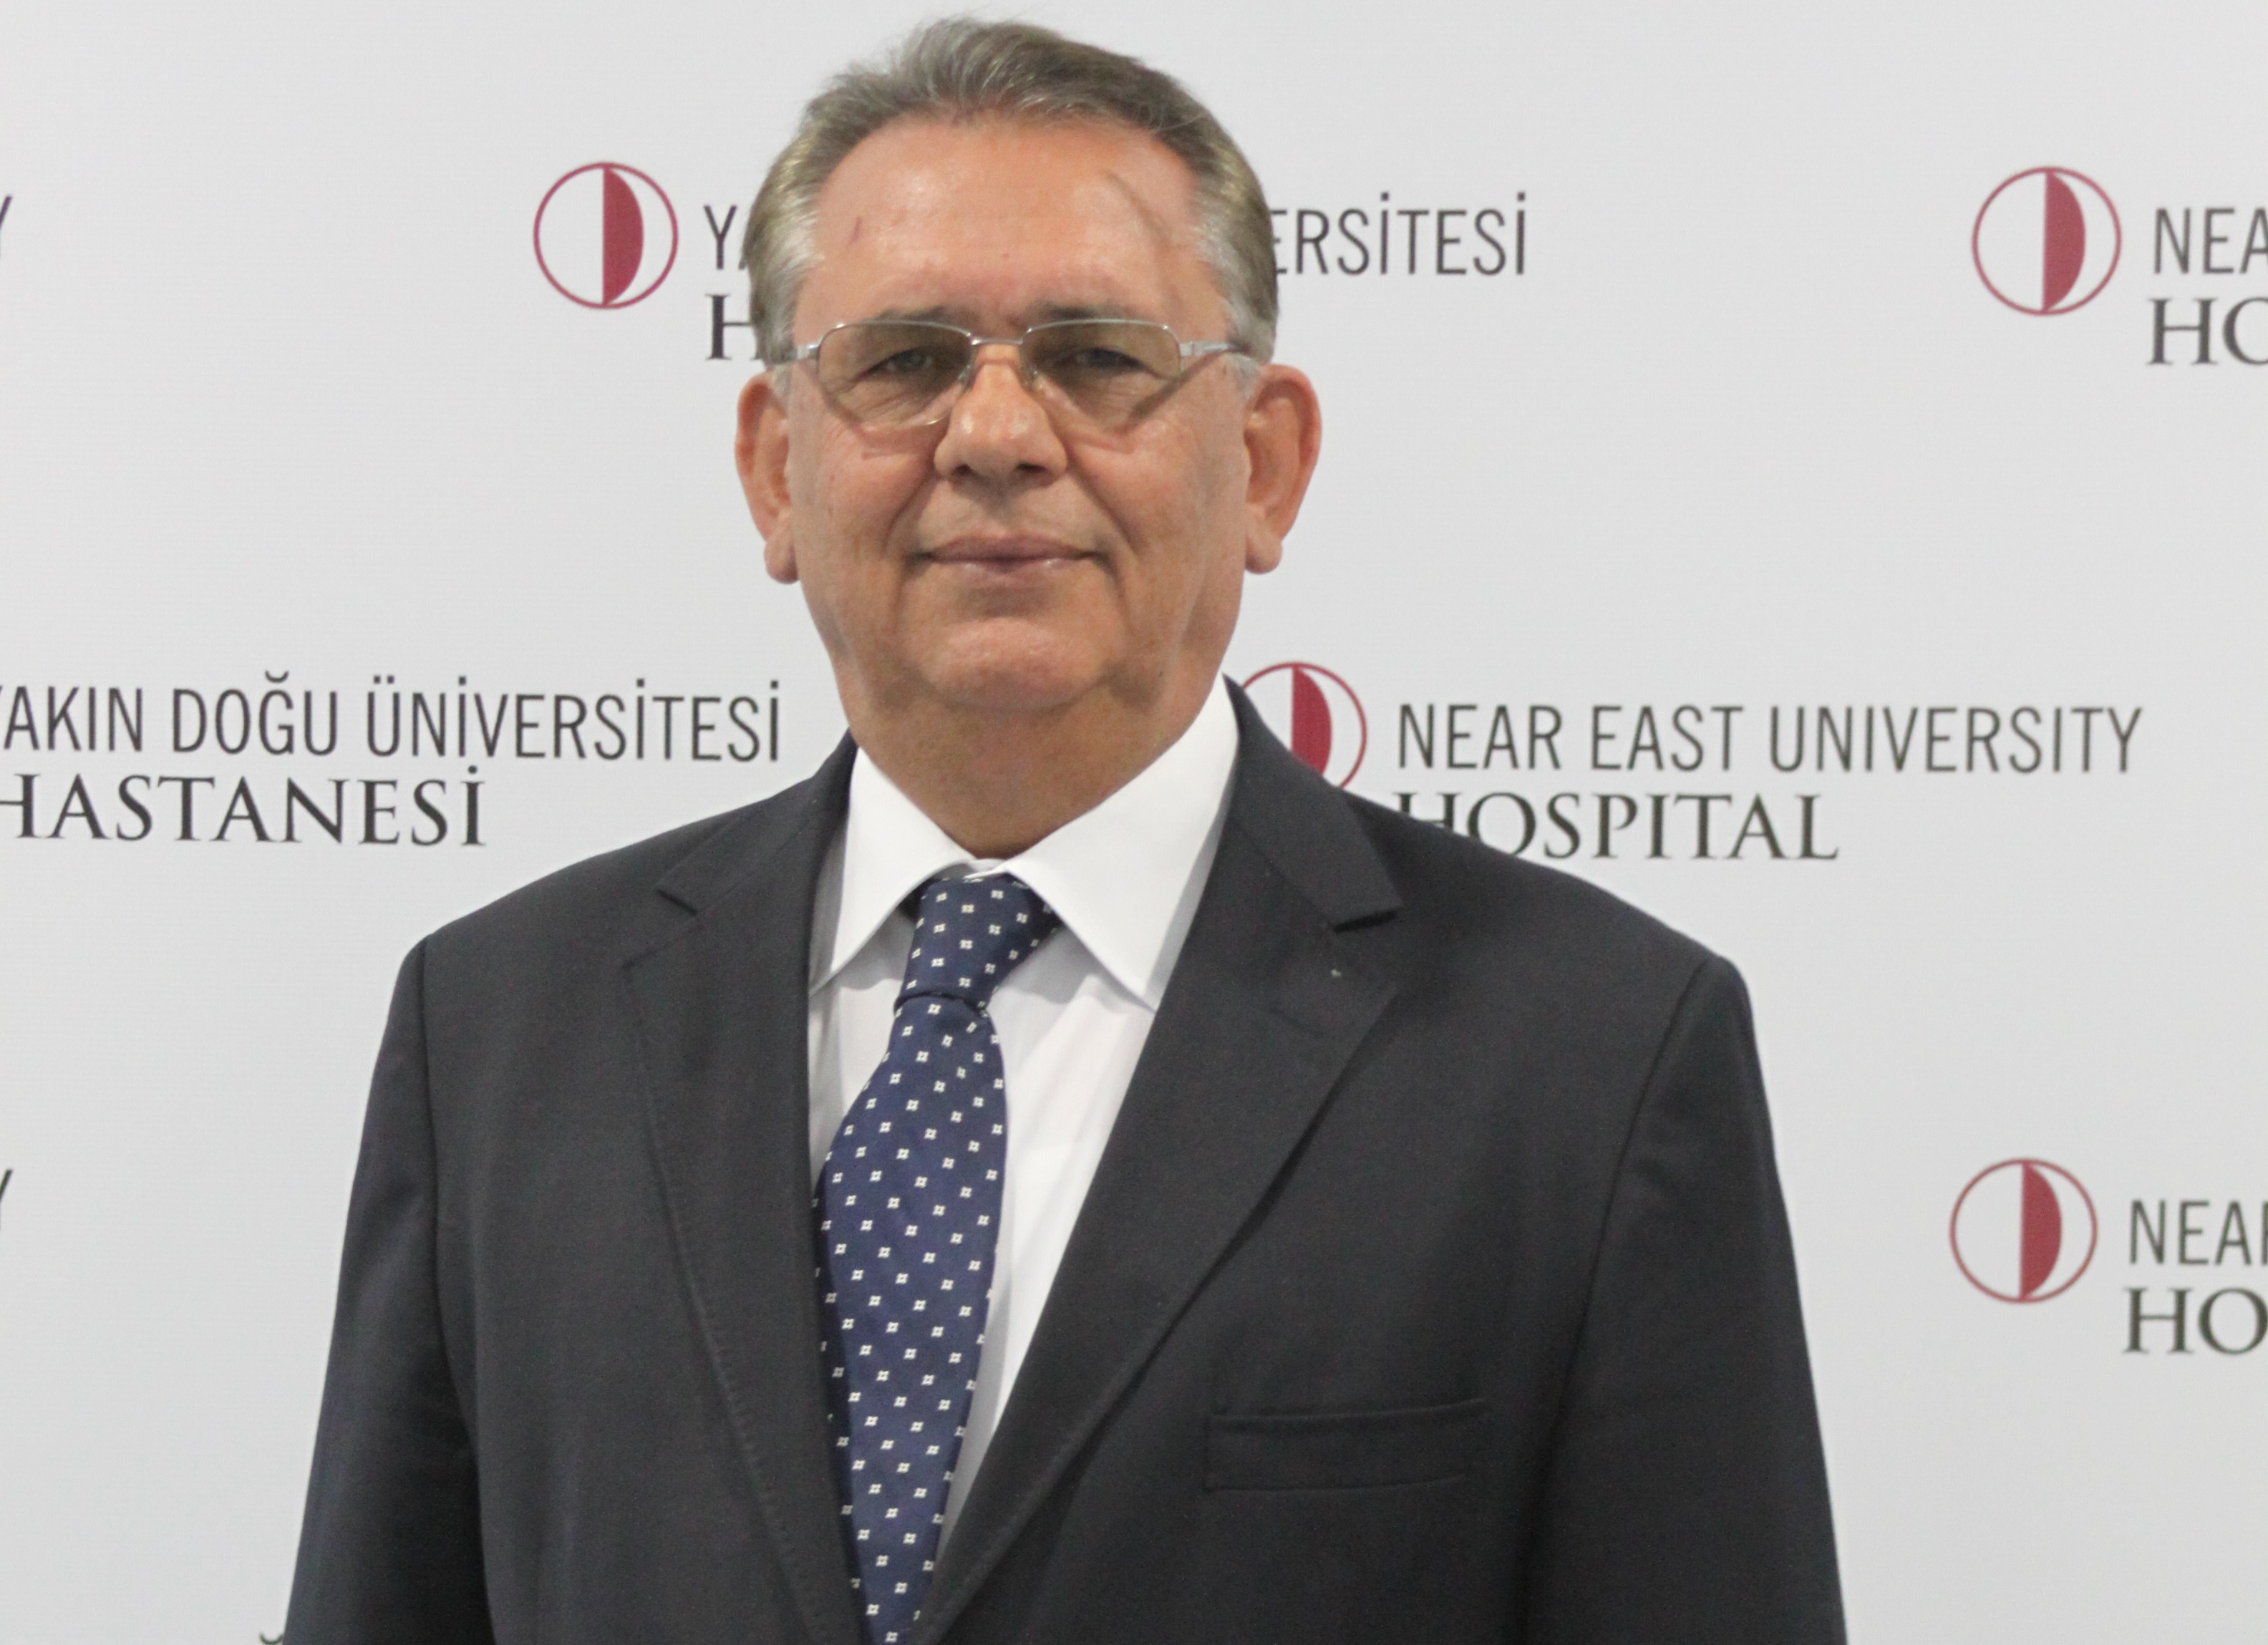 Yakın Doğu Üniversitesi Hastanesi Kulak Burun Boğaz Anabilim Dalı Başkanlığına Prof. Dr. Ferhat Erişir Getirildi!